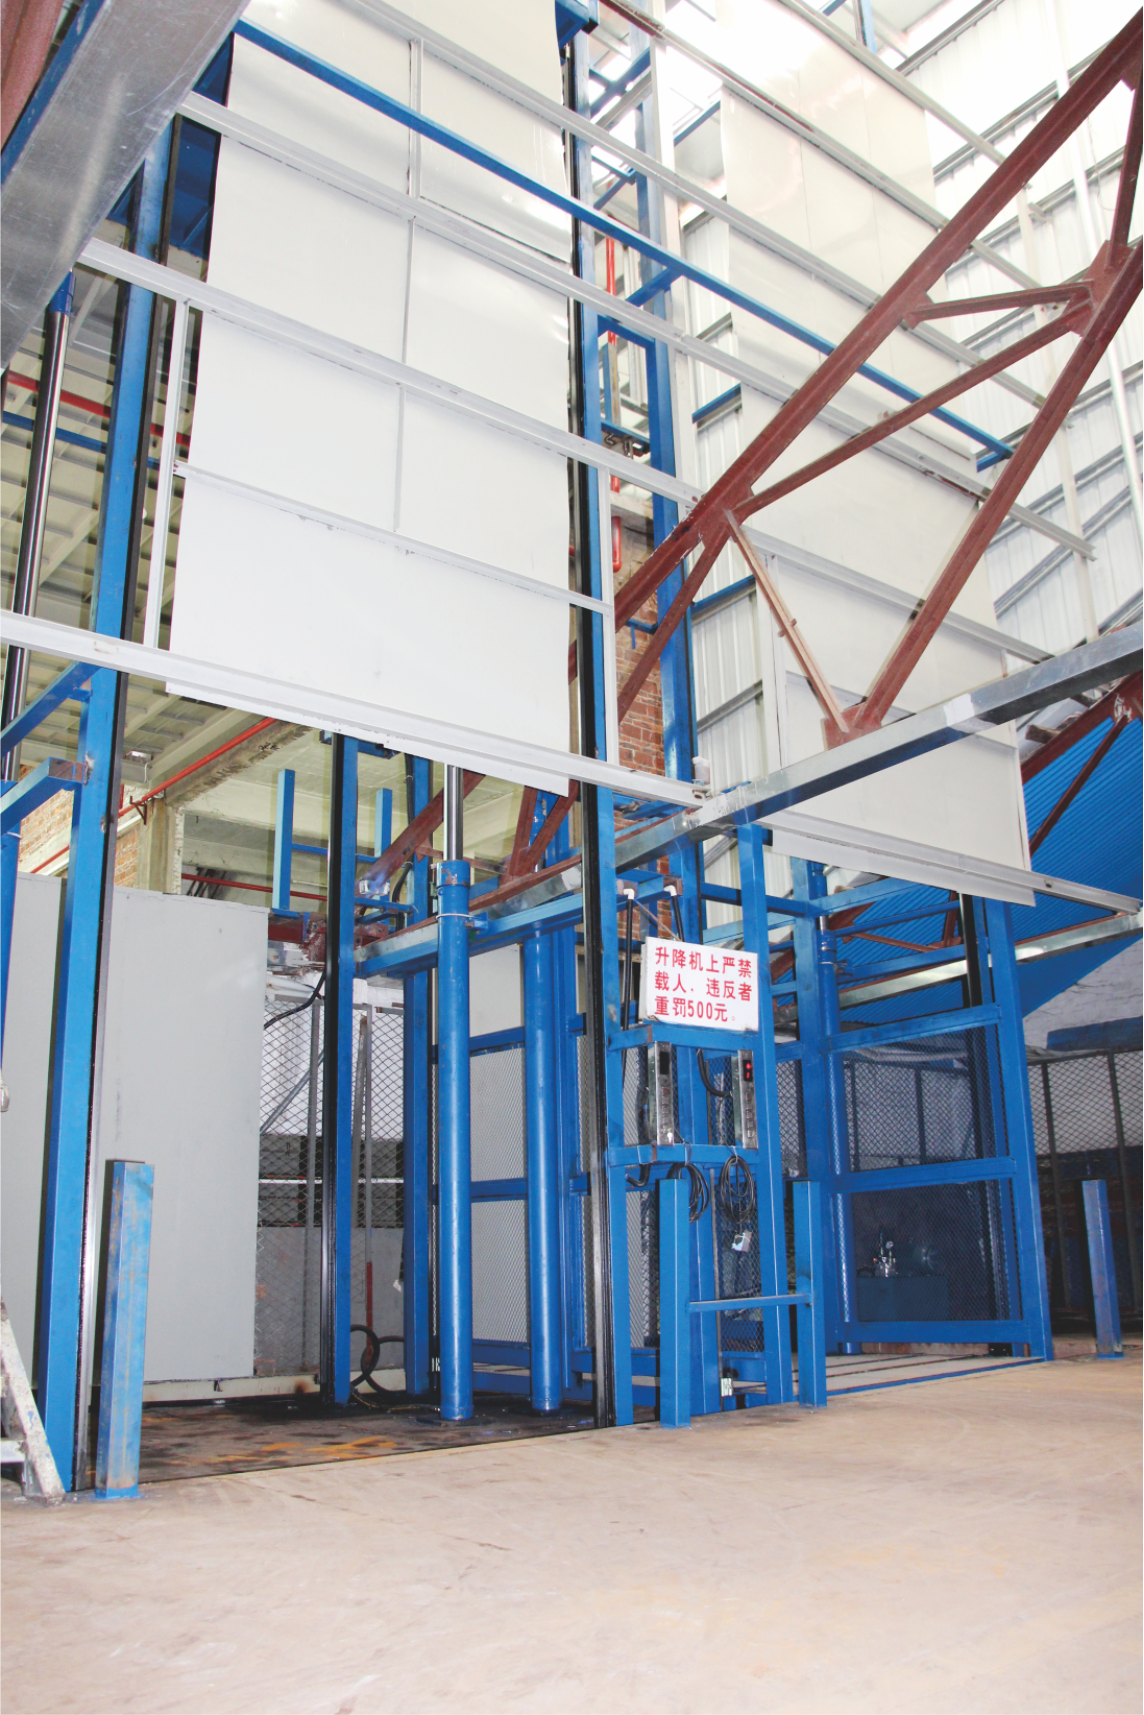 Elevador de carga vertical hidráulico NIULI para materiales de construcción, elevador de mercancías aprobado por la CE, elevador hidráulico de carga para almacén